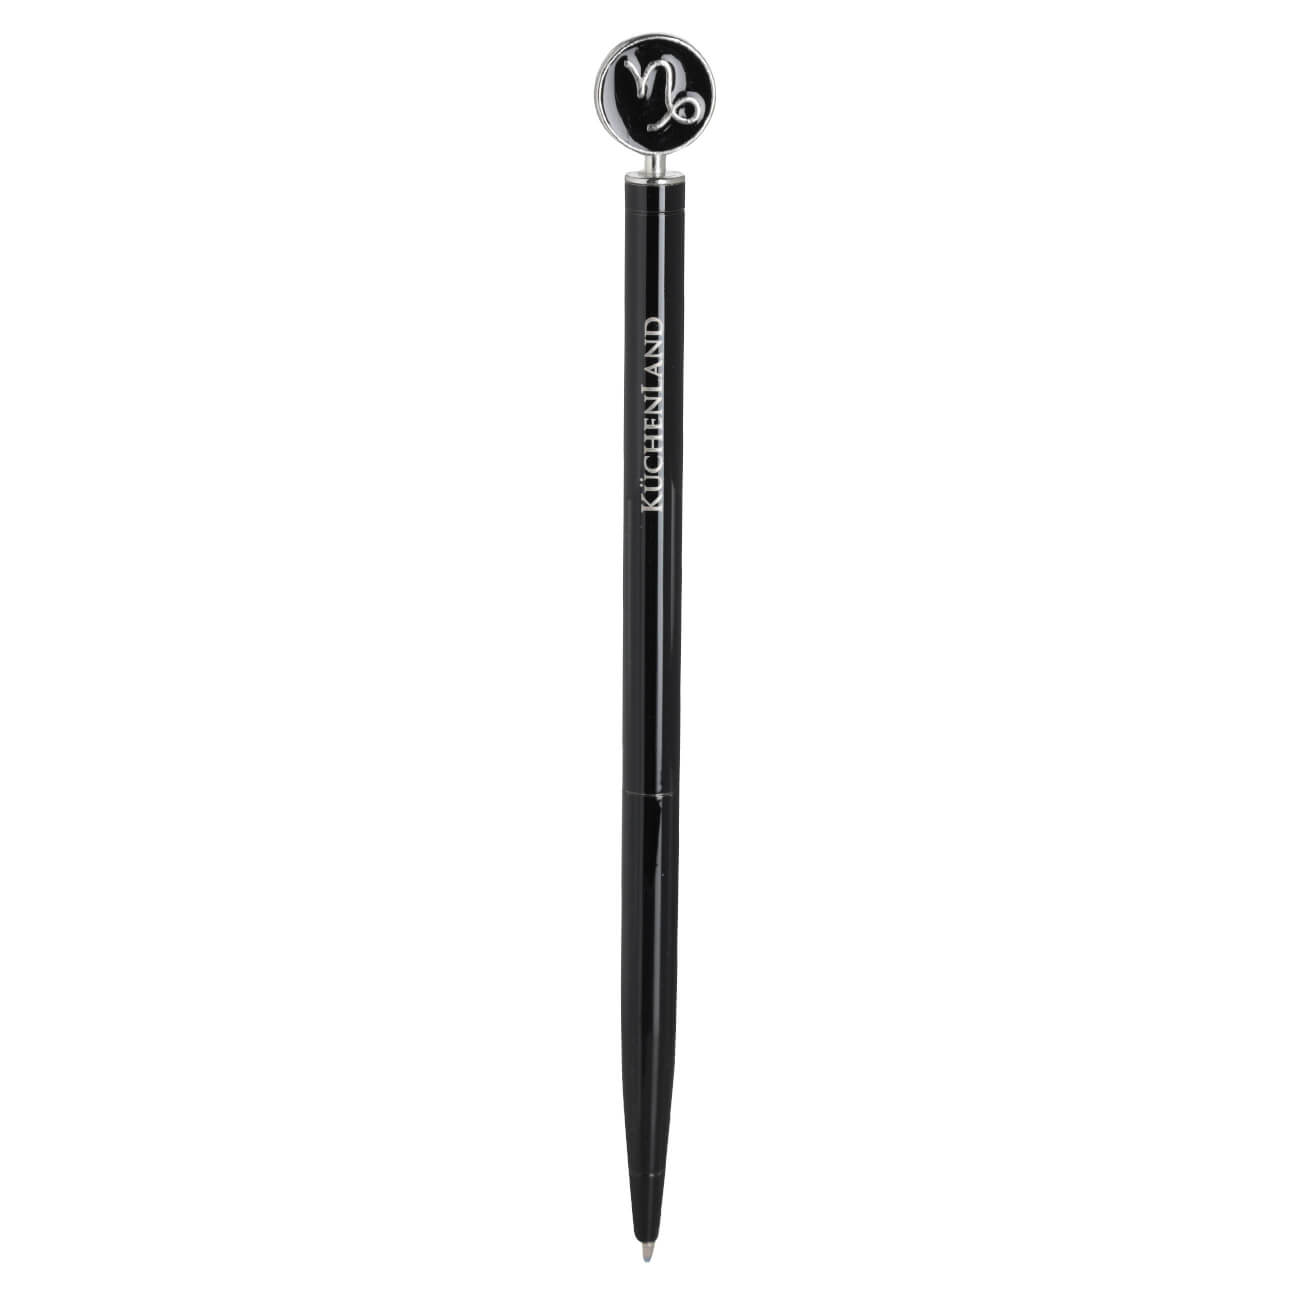 Ручка шариковая, 15 см, с фигуркой, сталь, черно-серебристая, Козерог, Zodiac